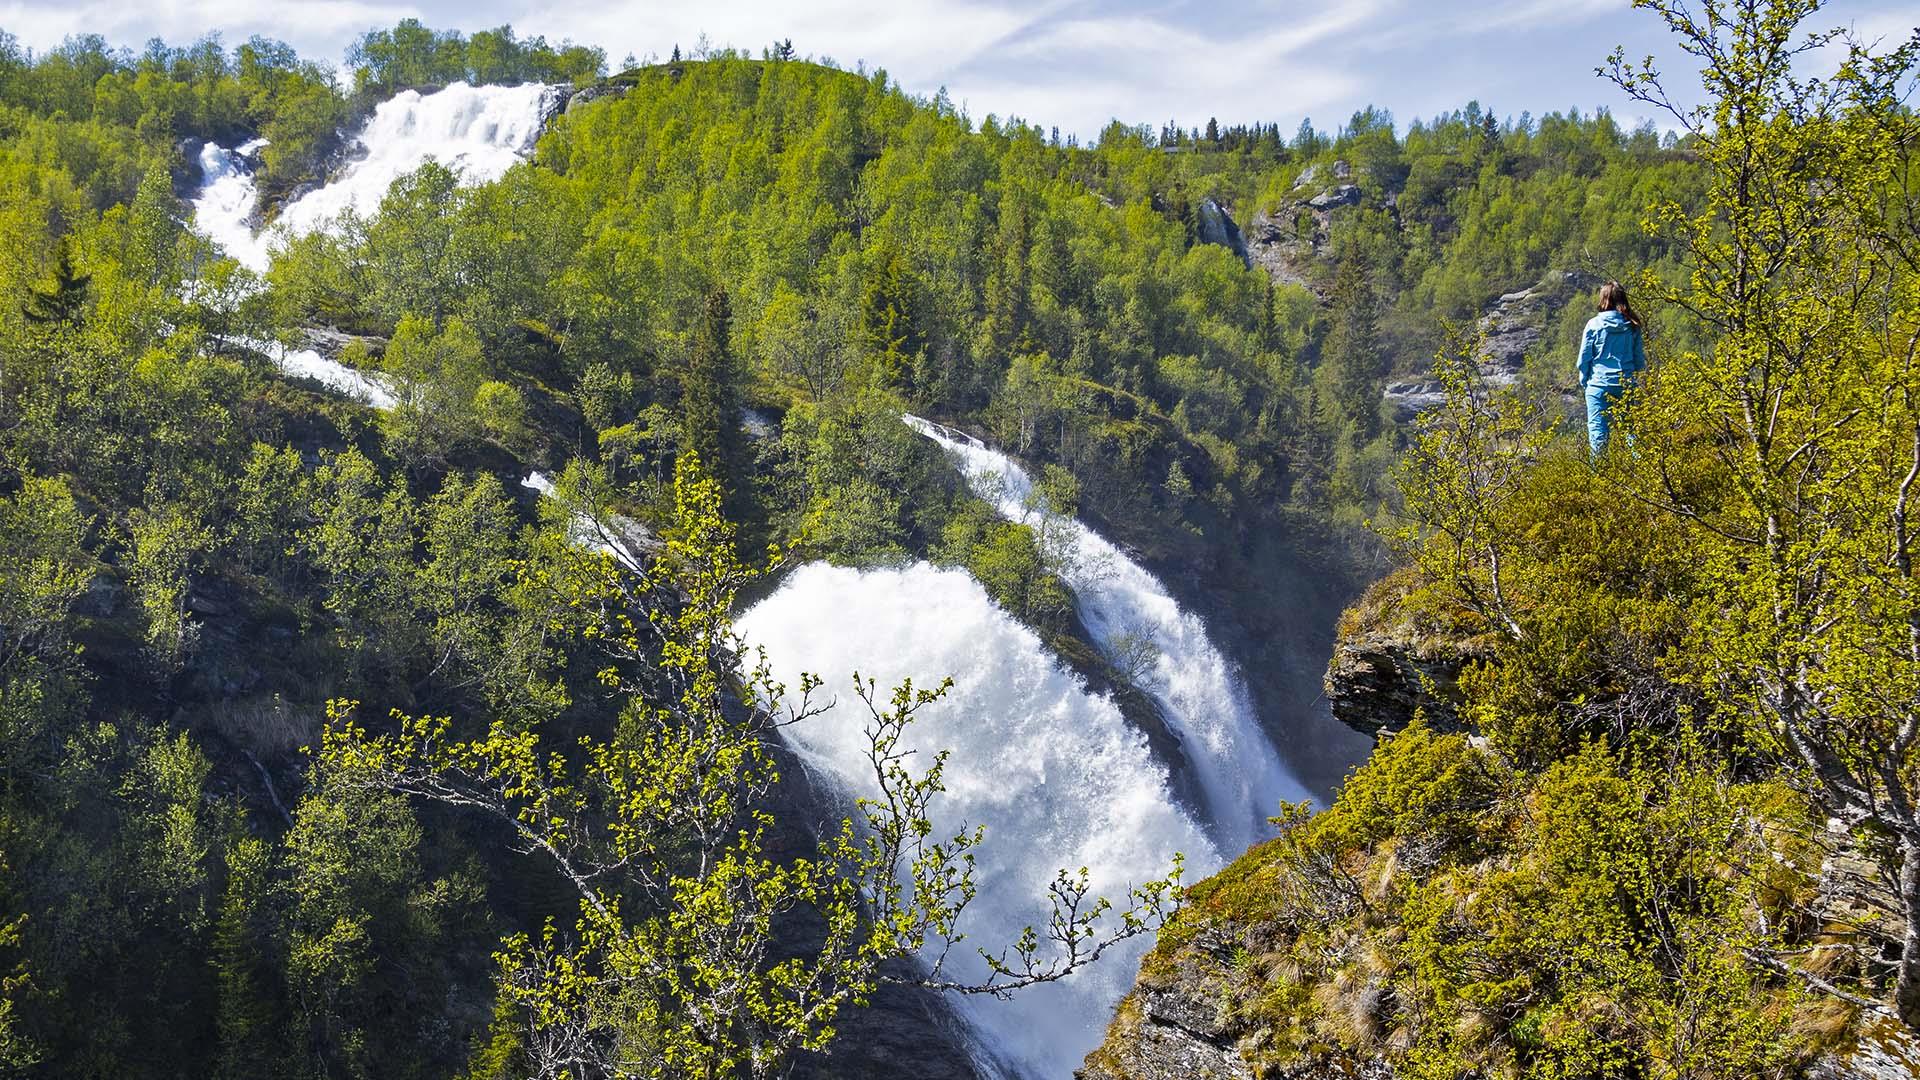 The waterfall Sputrefossen